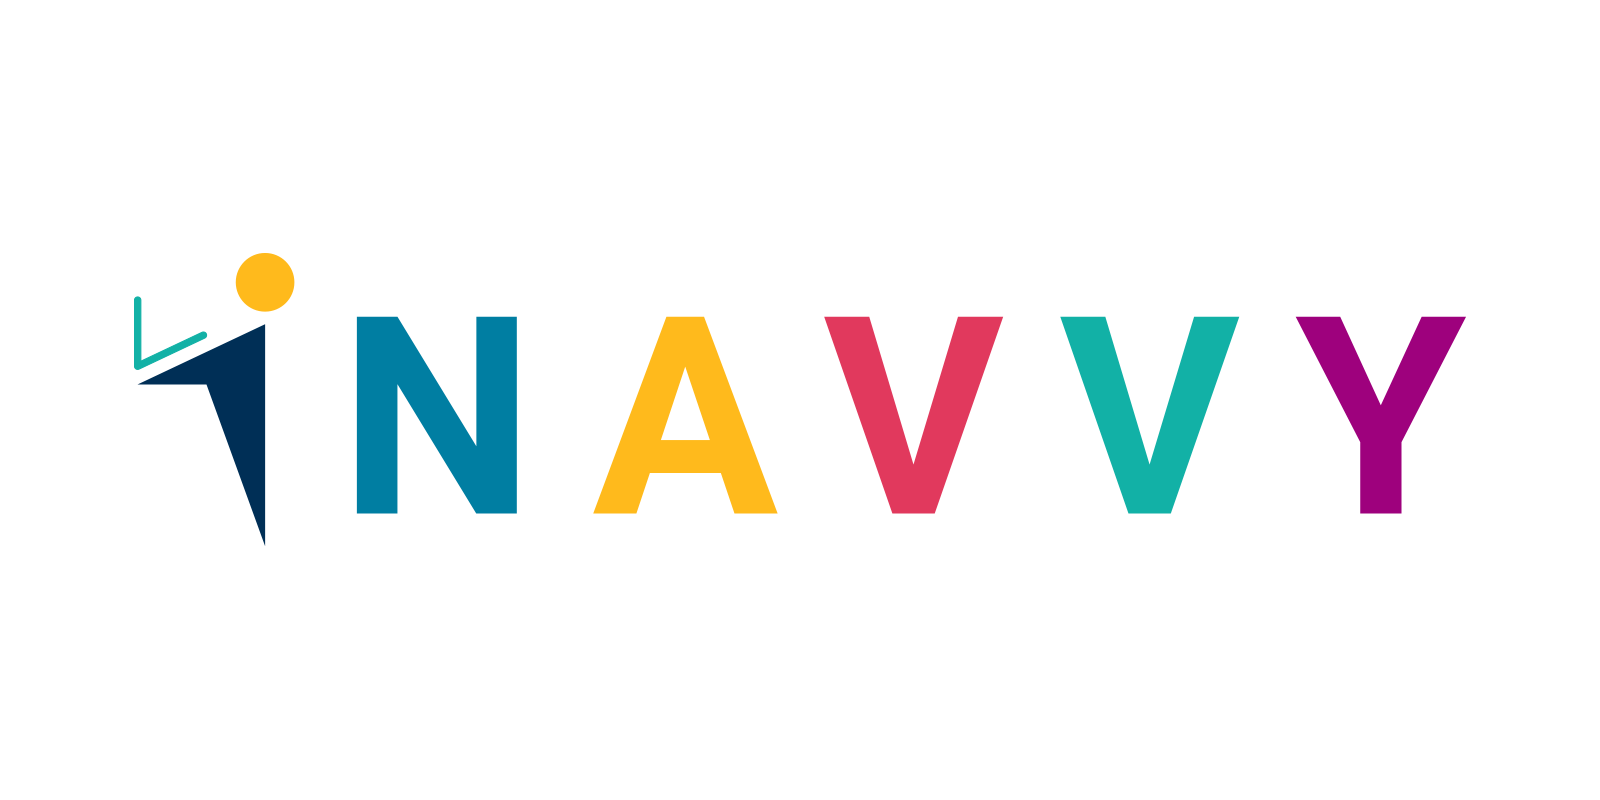 Navvy logo